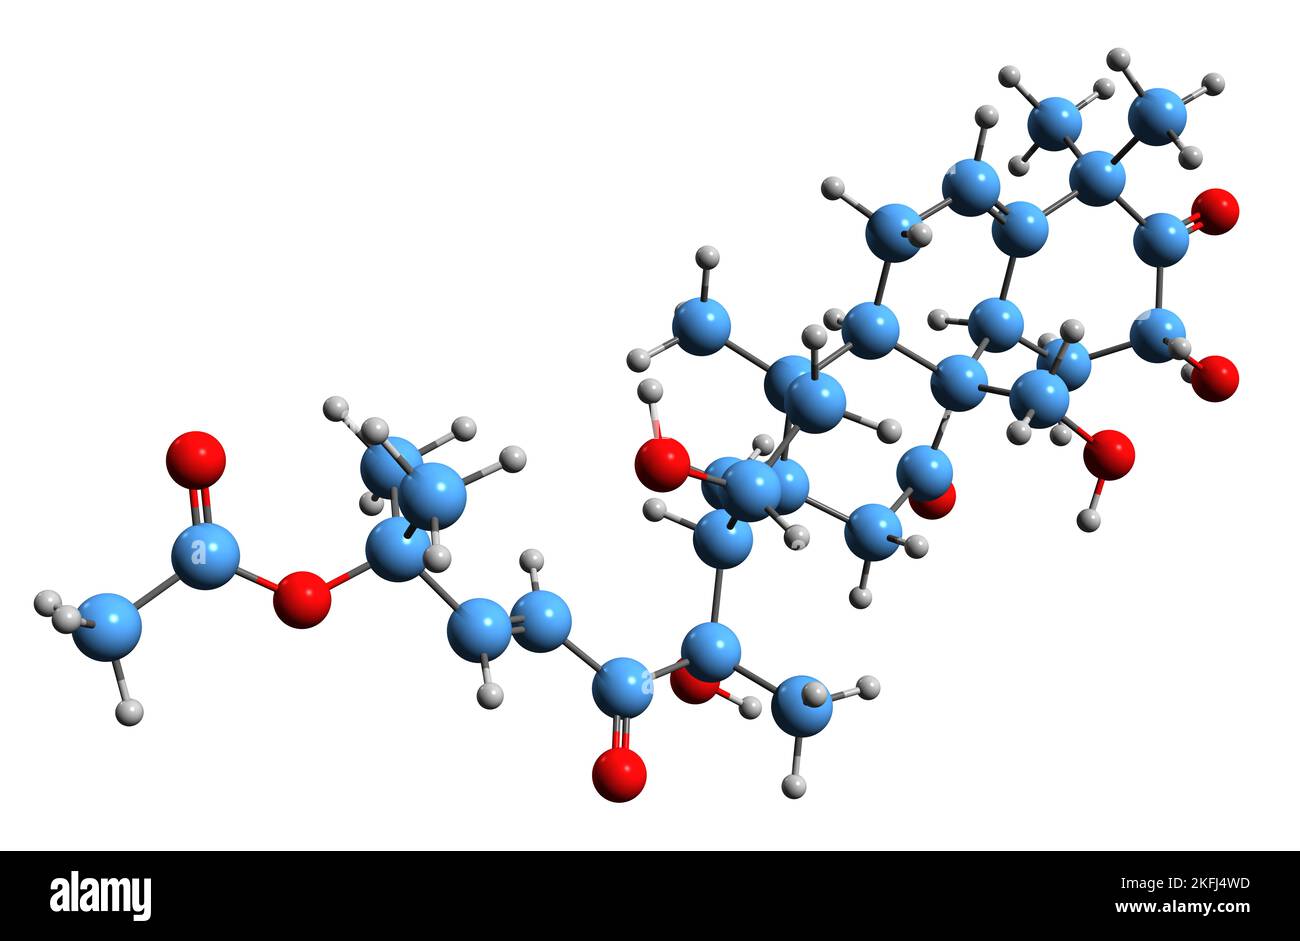 3D Bild der Skelettformel von Cucurbitacin - molekulare chemische Struktur von Triterpen, isoliert auf weißem Hintergrund Stockfoto